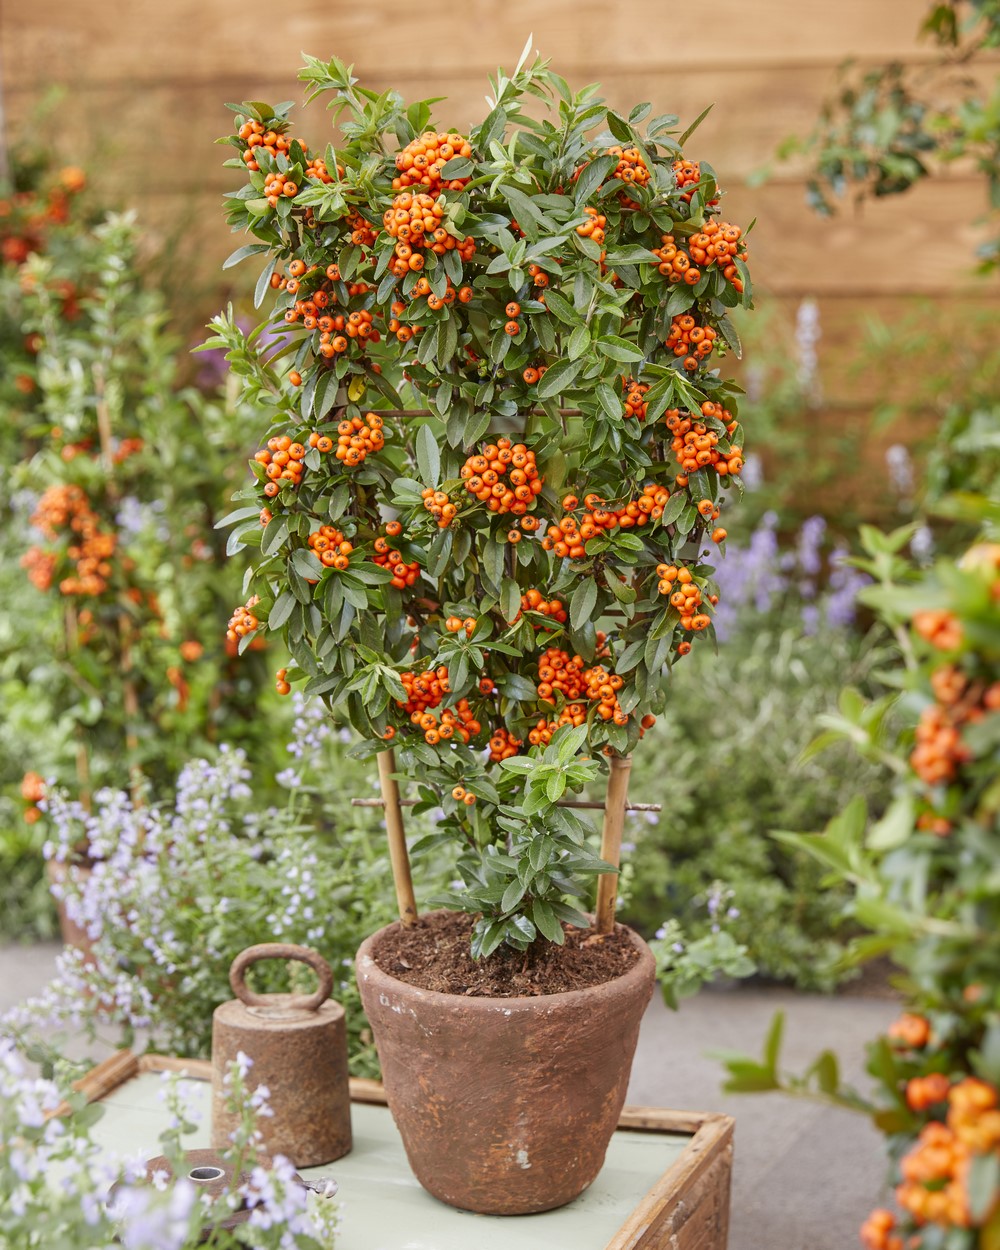 Plantas con frutos ornamentales de color naranja en otoño e invierno cultivada en maceta con espaldera